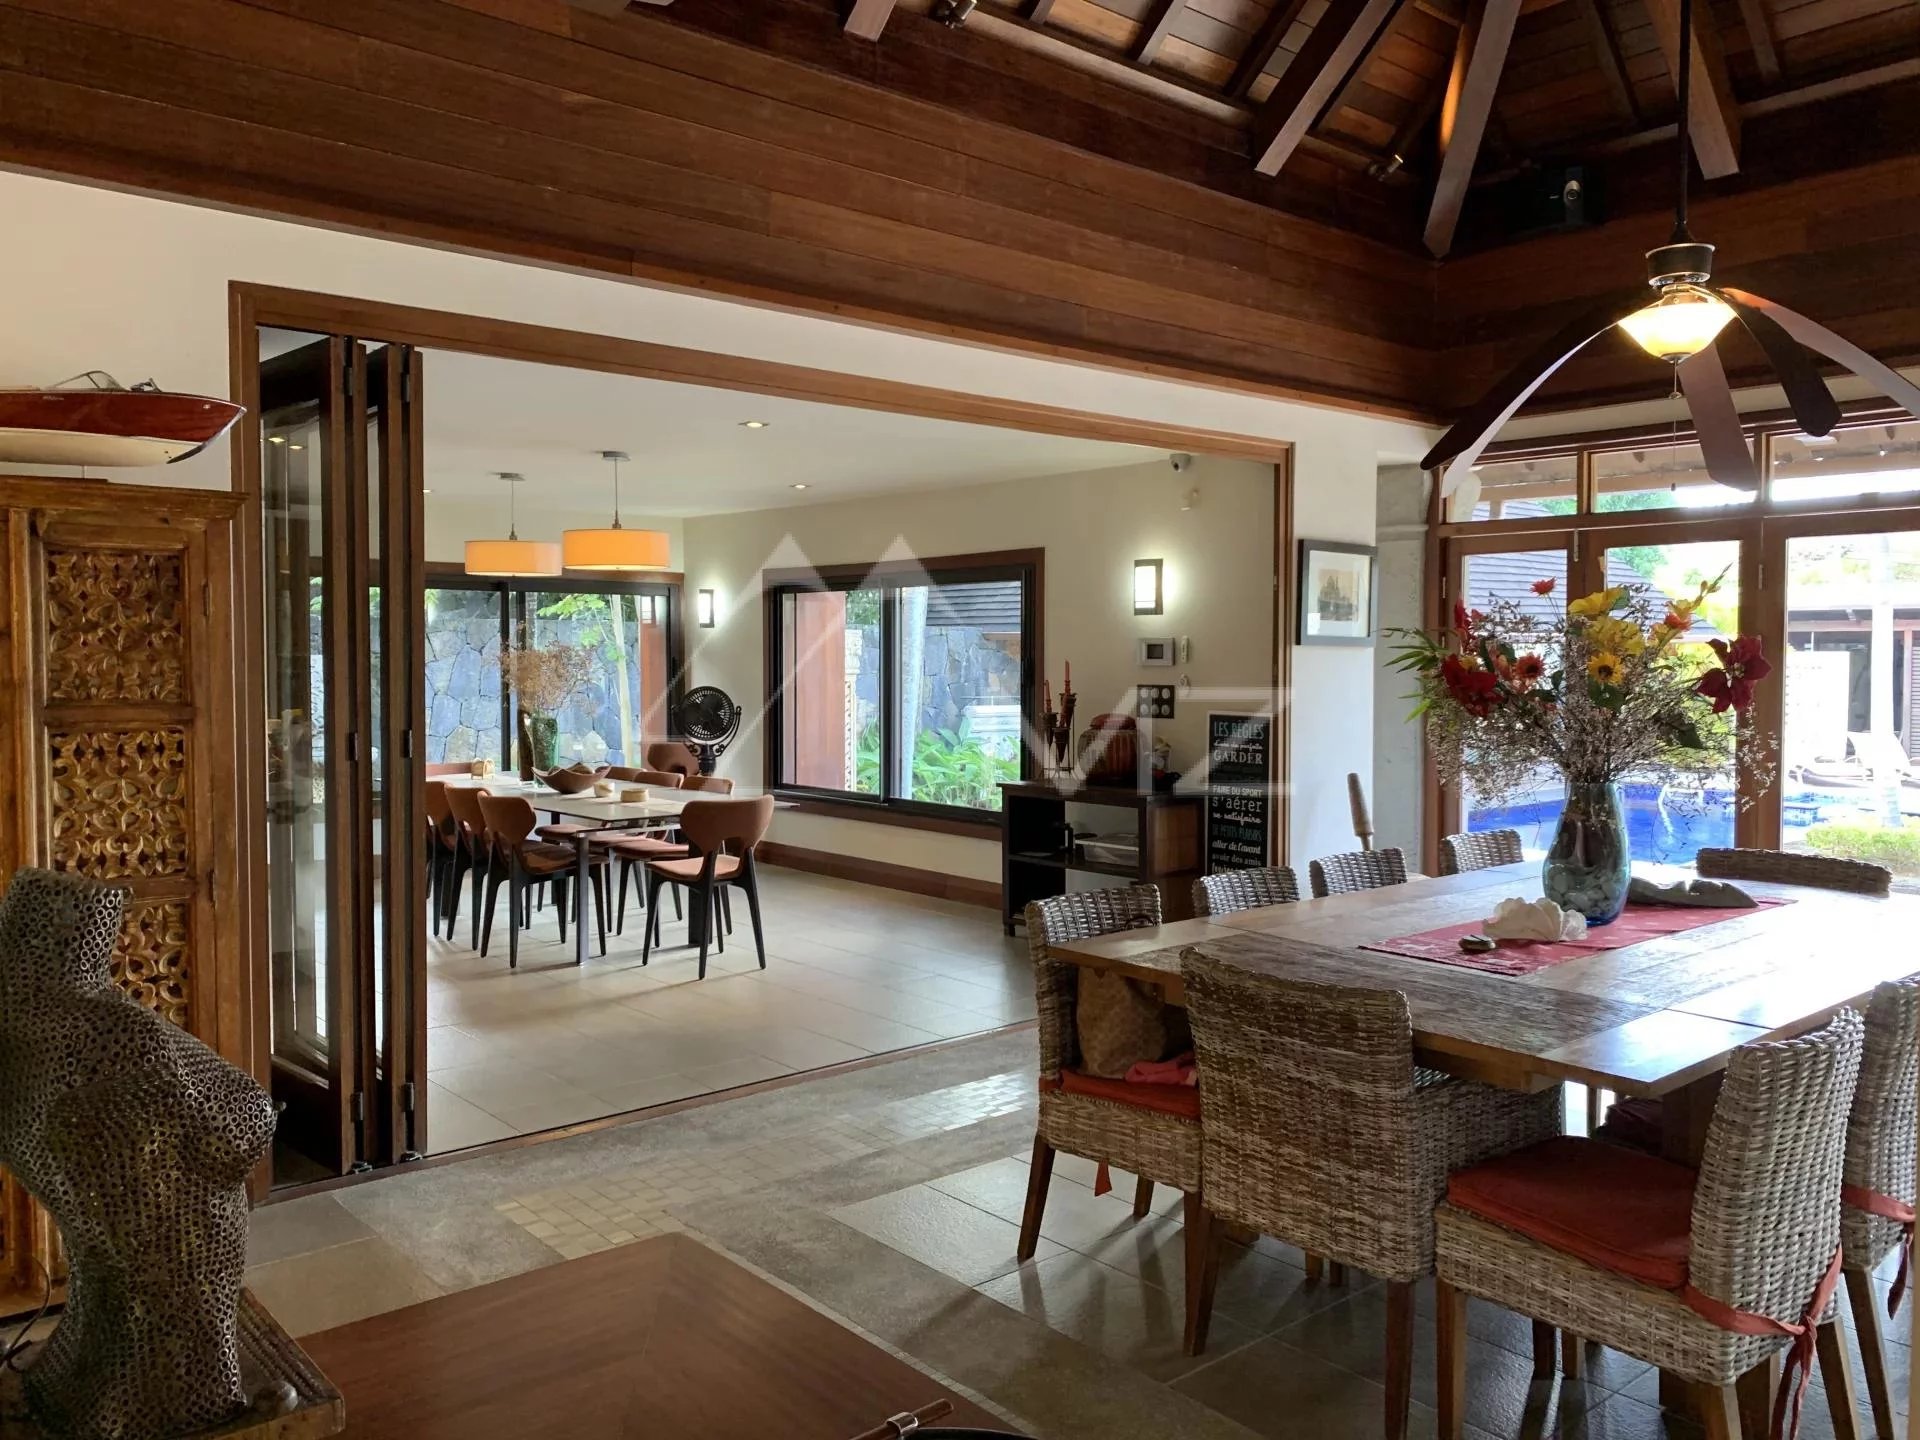 Mauritius - Sumptuous villa at Pointe aux canonniers